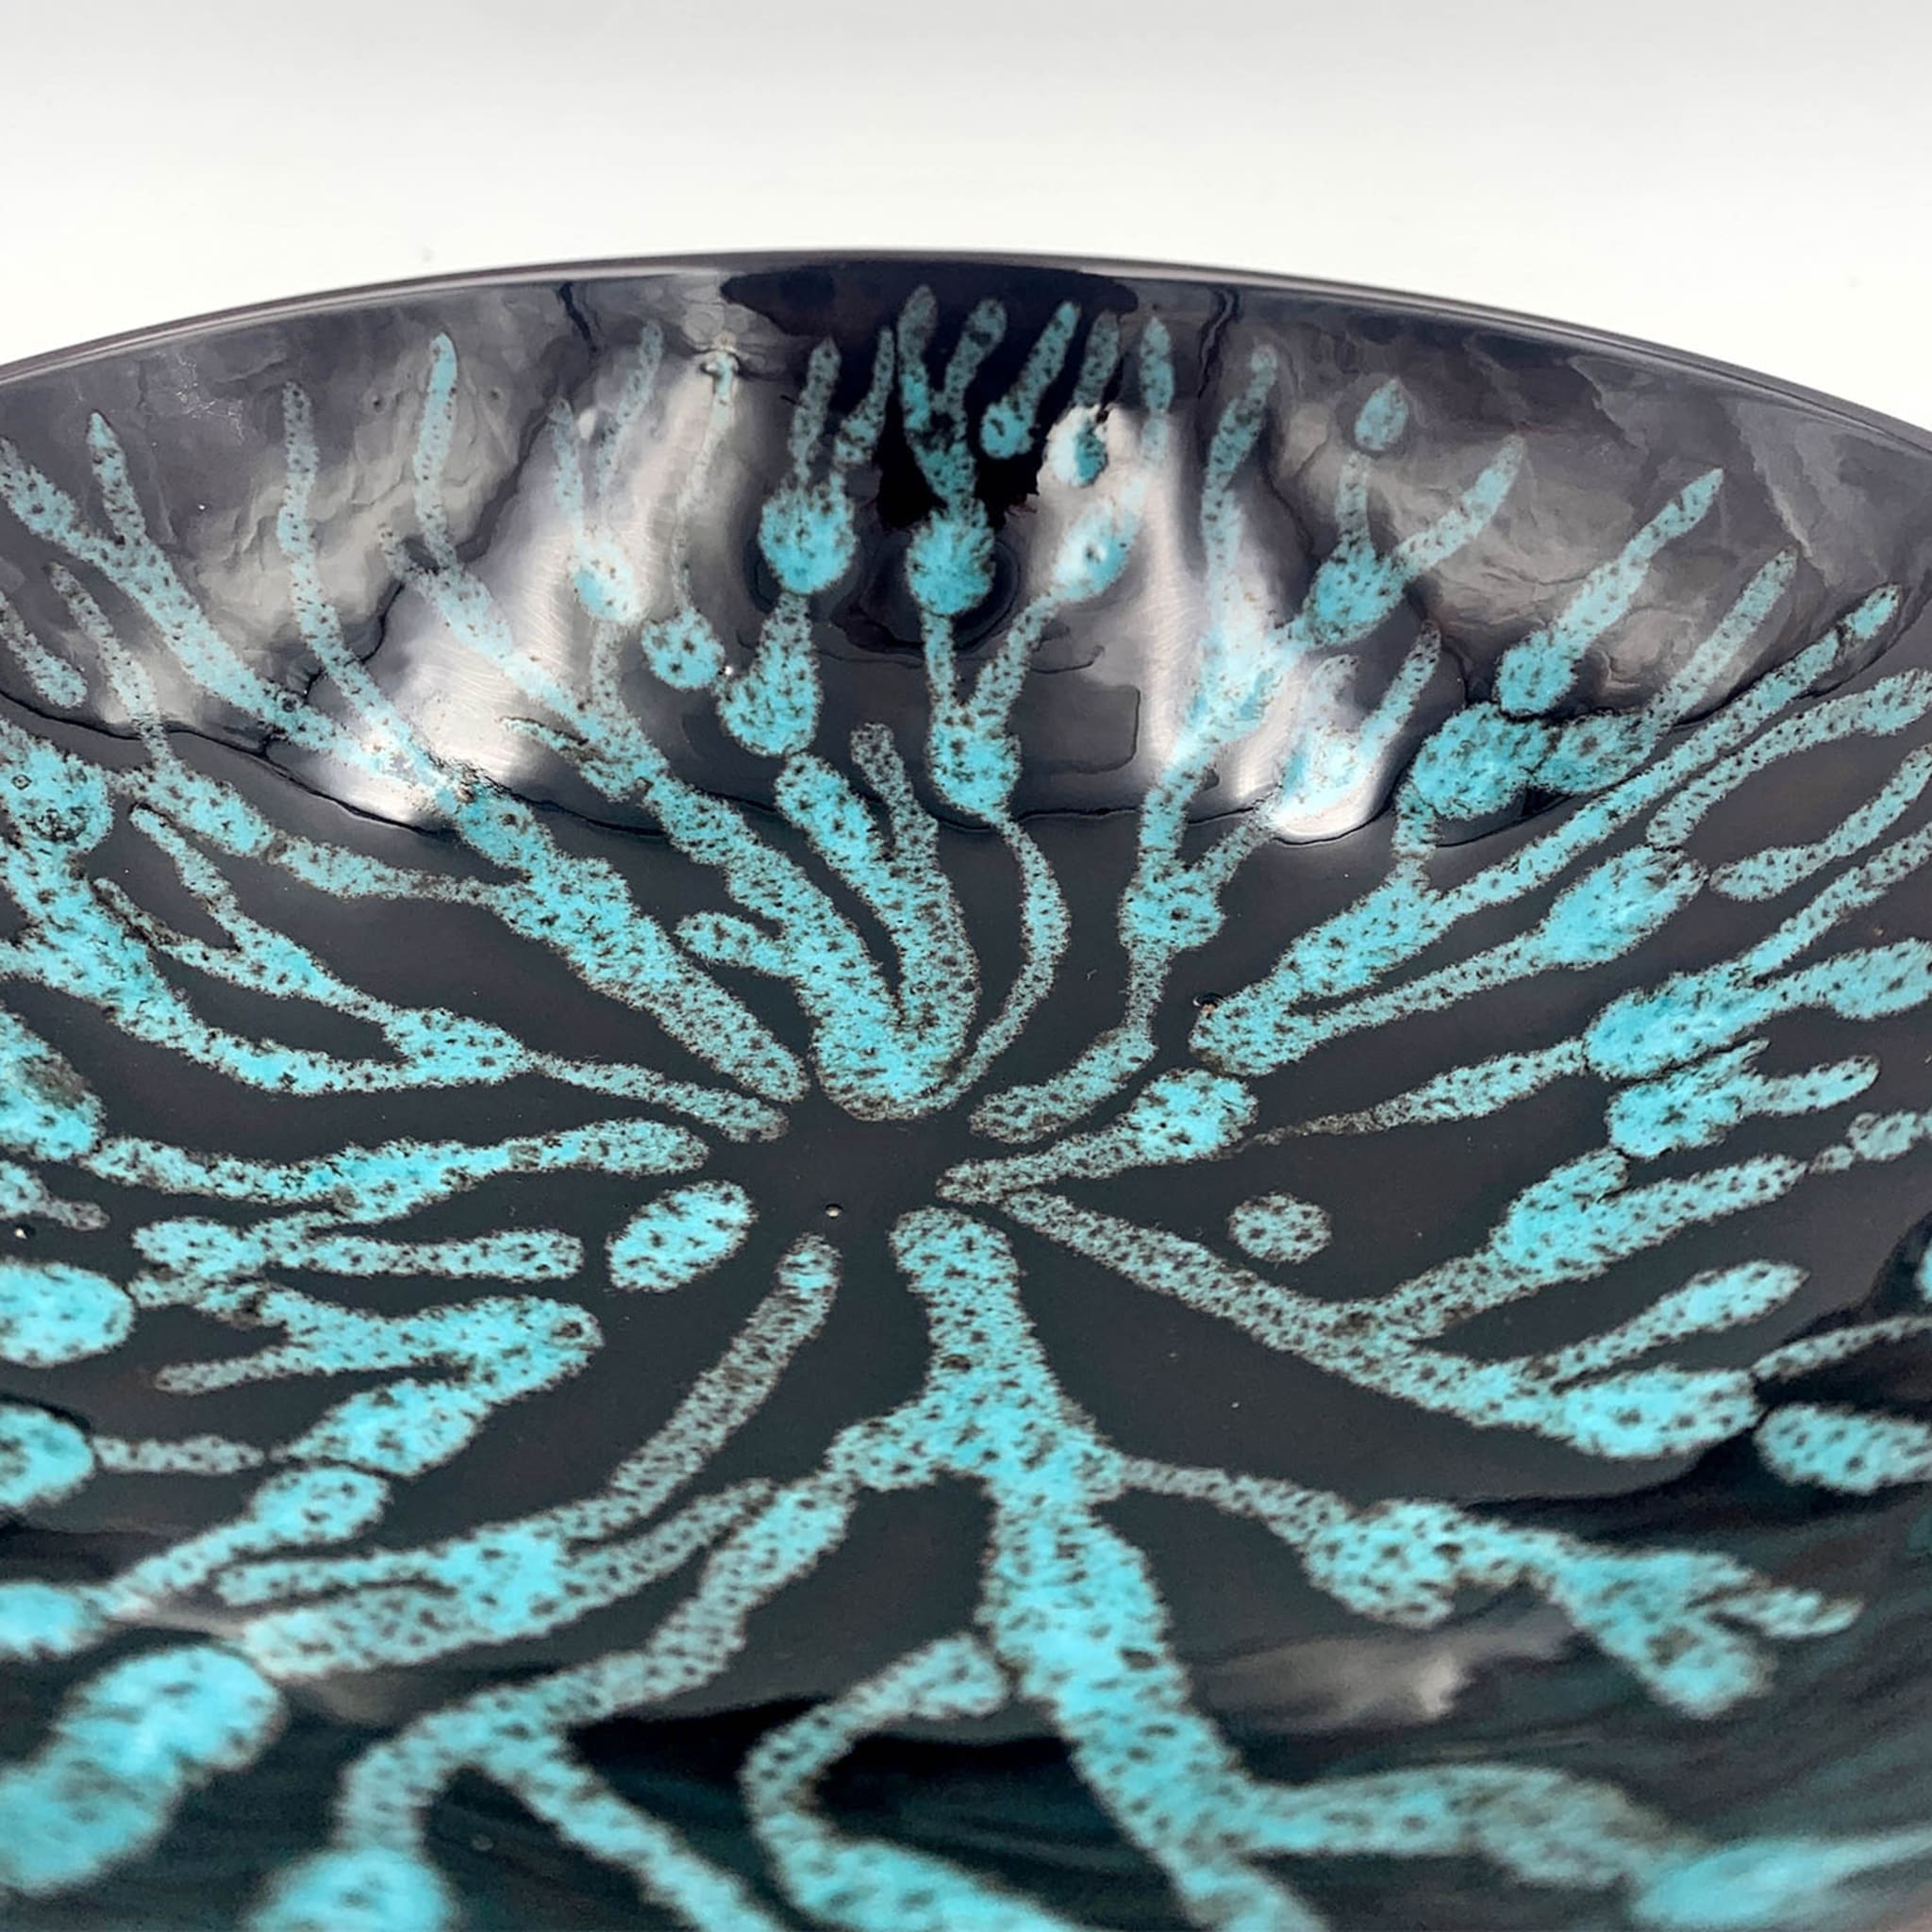 Corallo Blu Ceramic Centerpiece - Alternative view 1